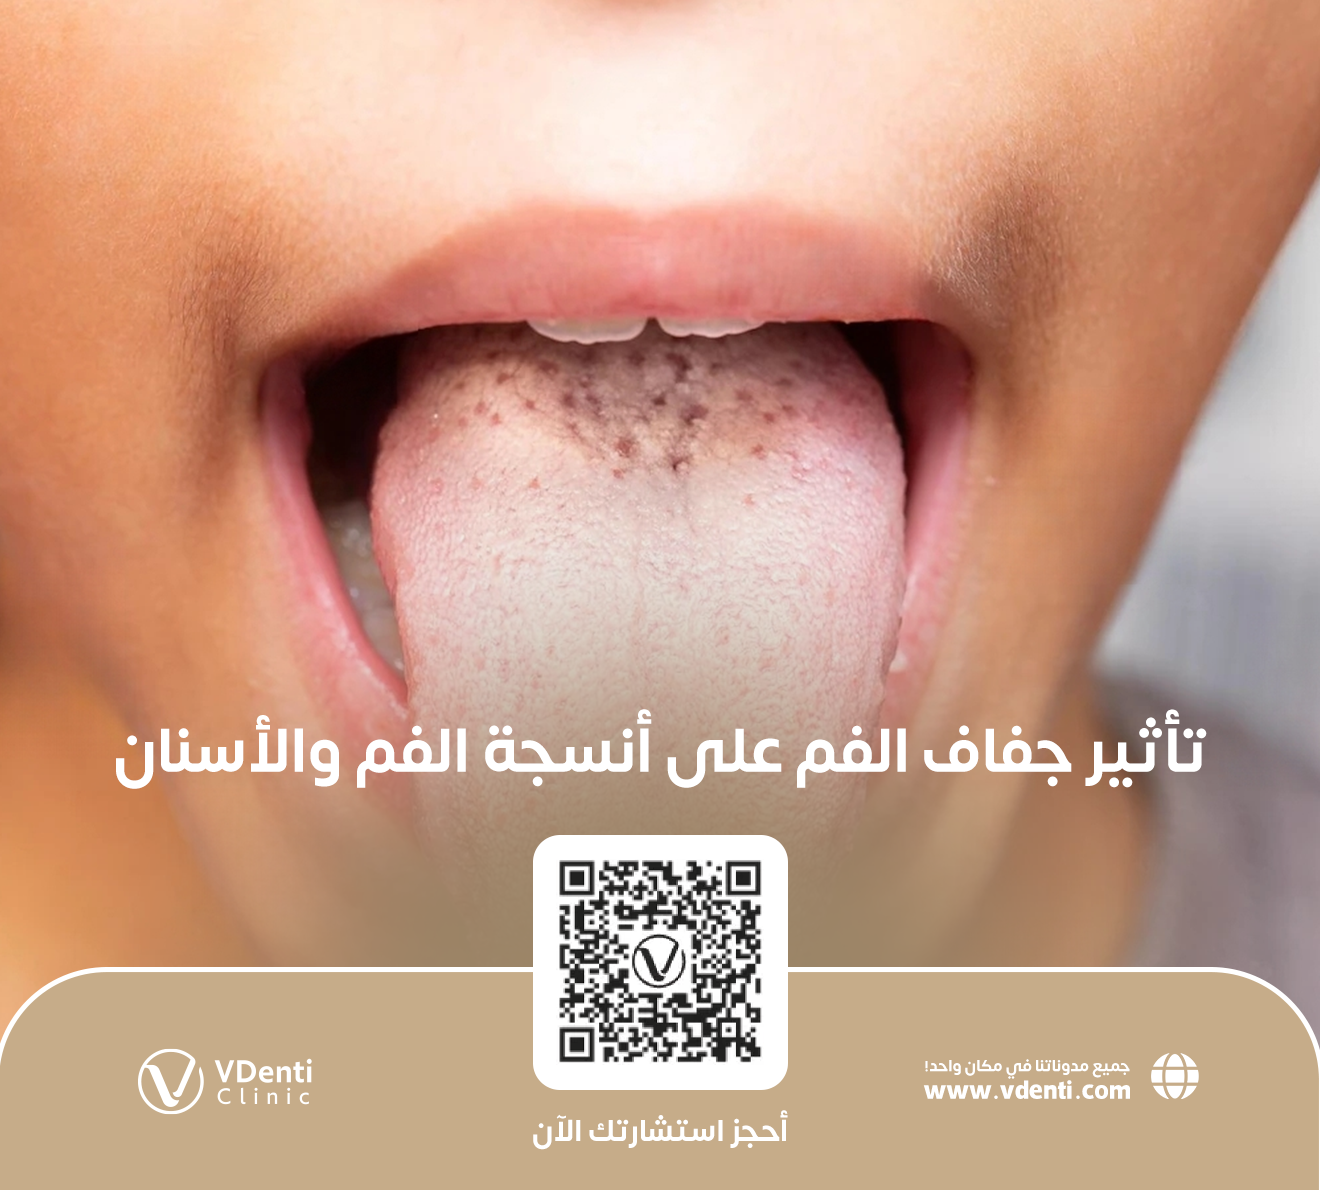 تأثير جفاف الفم على أنسجة الفم والأسنان